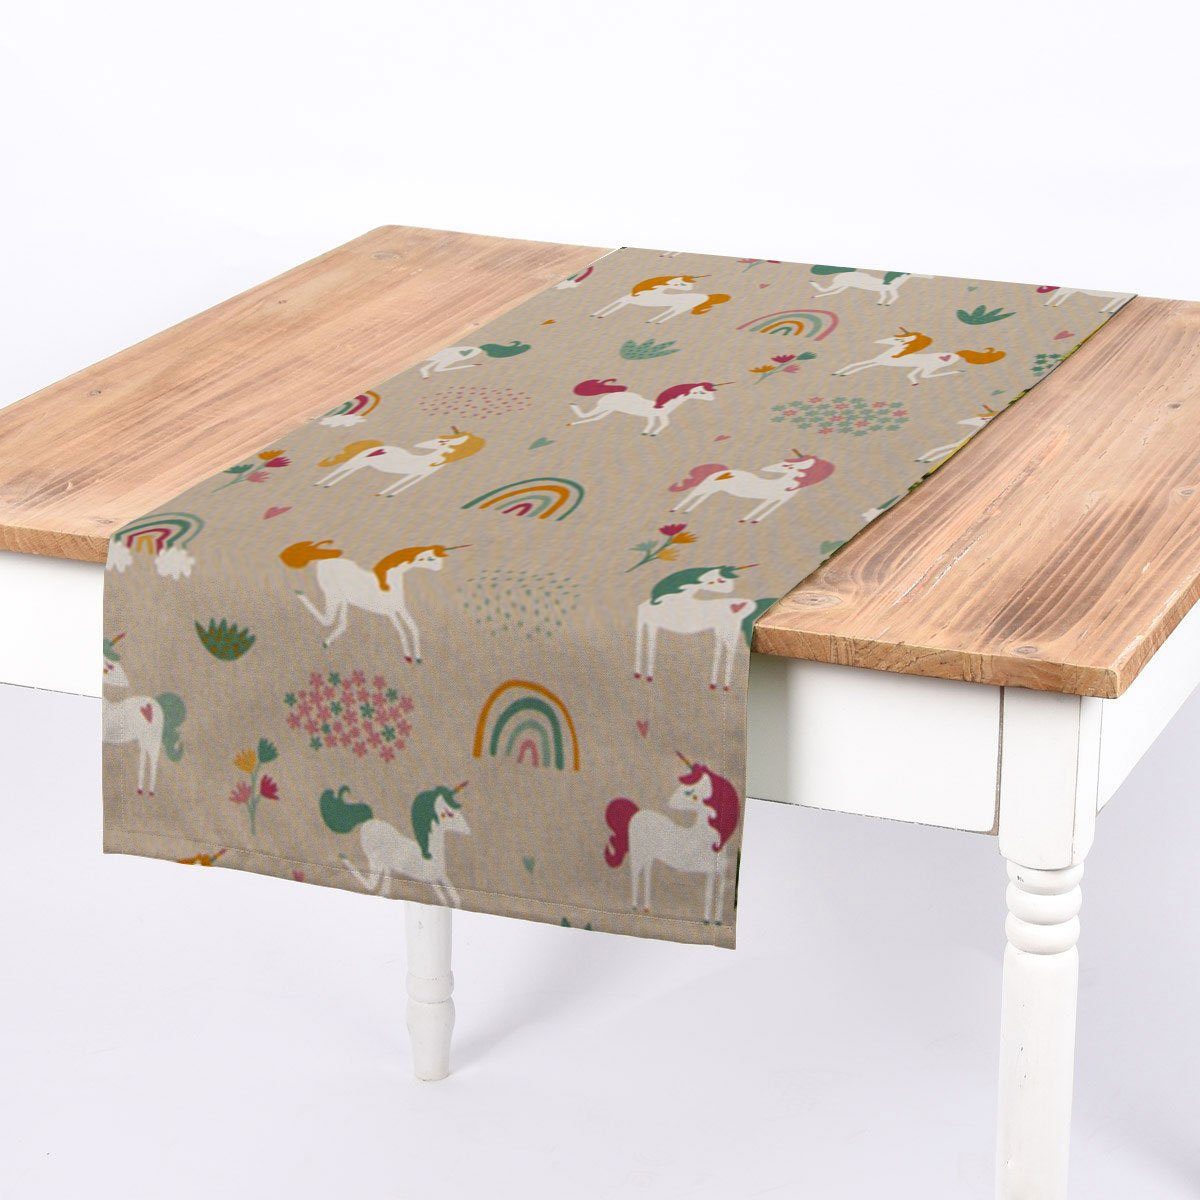 SCHÖNER LEBEN. Tischläufer SCHÖNER LEBEN. Tischläufer Einhörner Regenbogen natur bunt 40x160cm, handmade